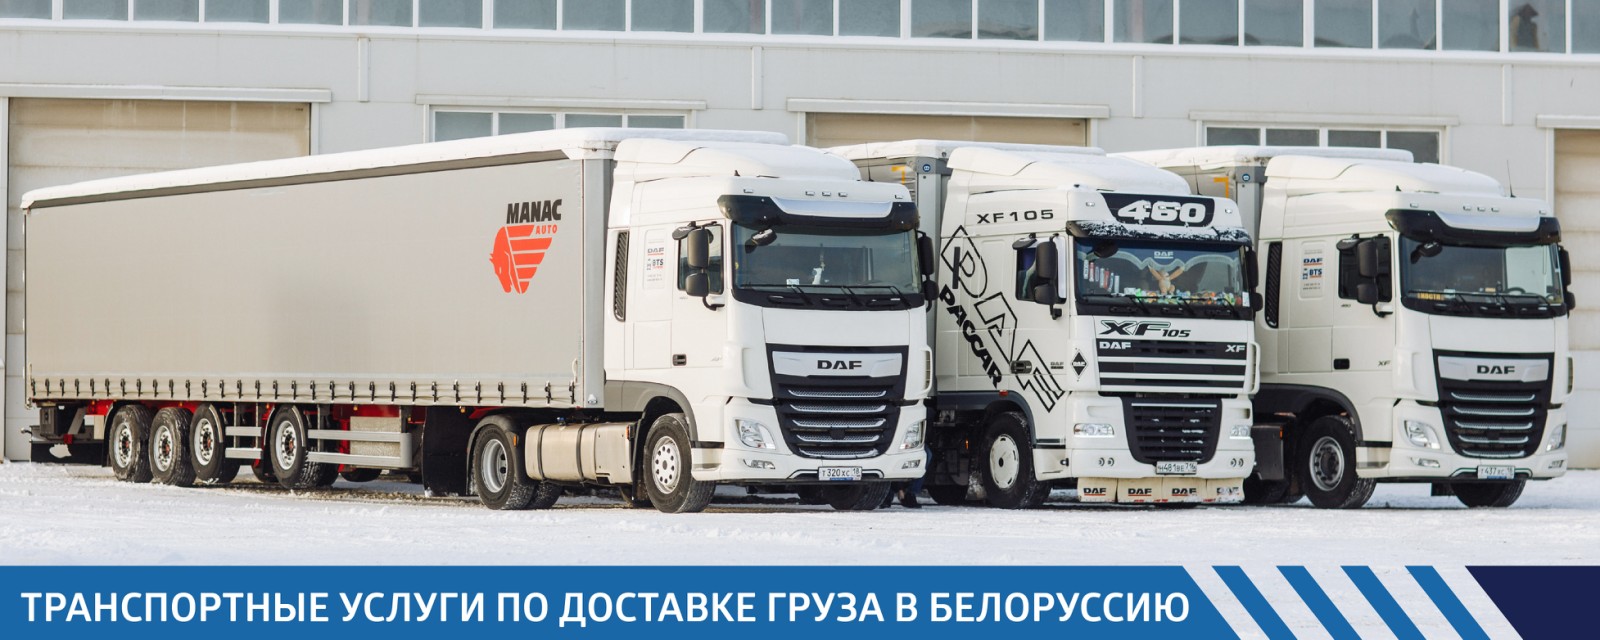 Транспортные услуги по доставке груза в Белоруссию